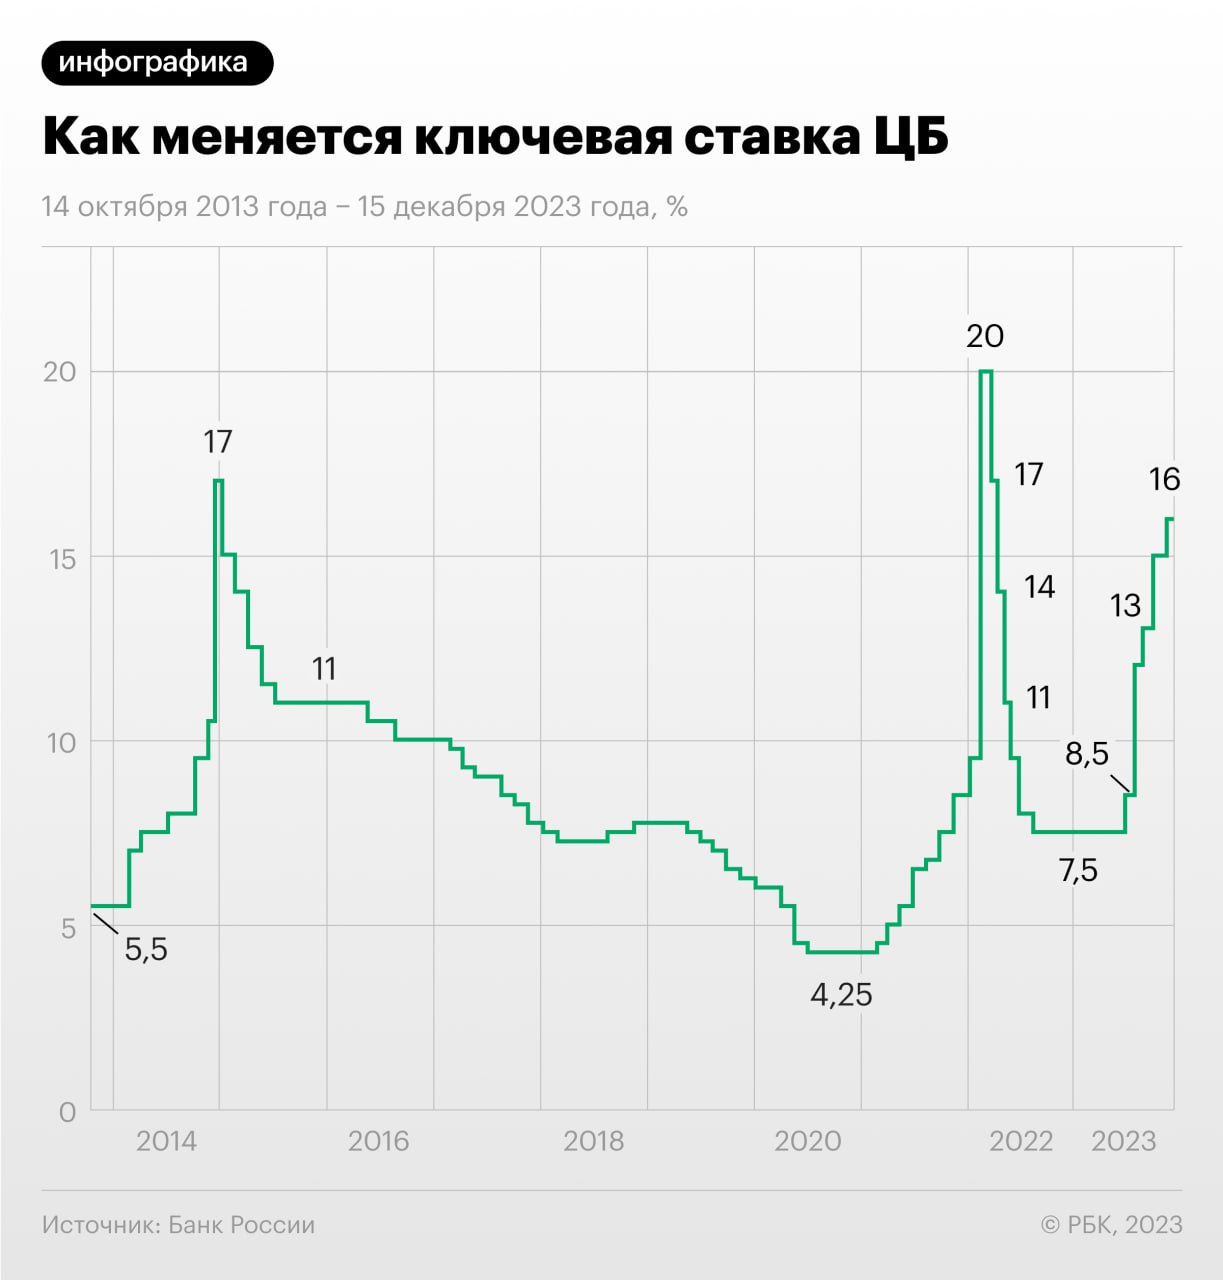 Изменение ключевой ставки Центробанка России 14 октября 2013 года&nbsp;&mdash; 15 декабря 2023 года